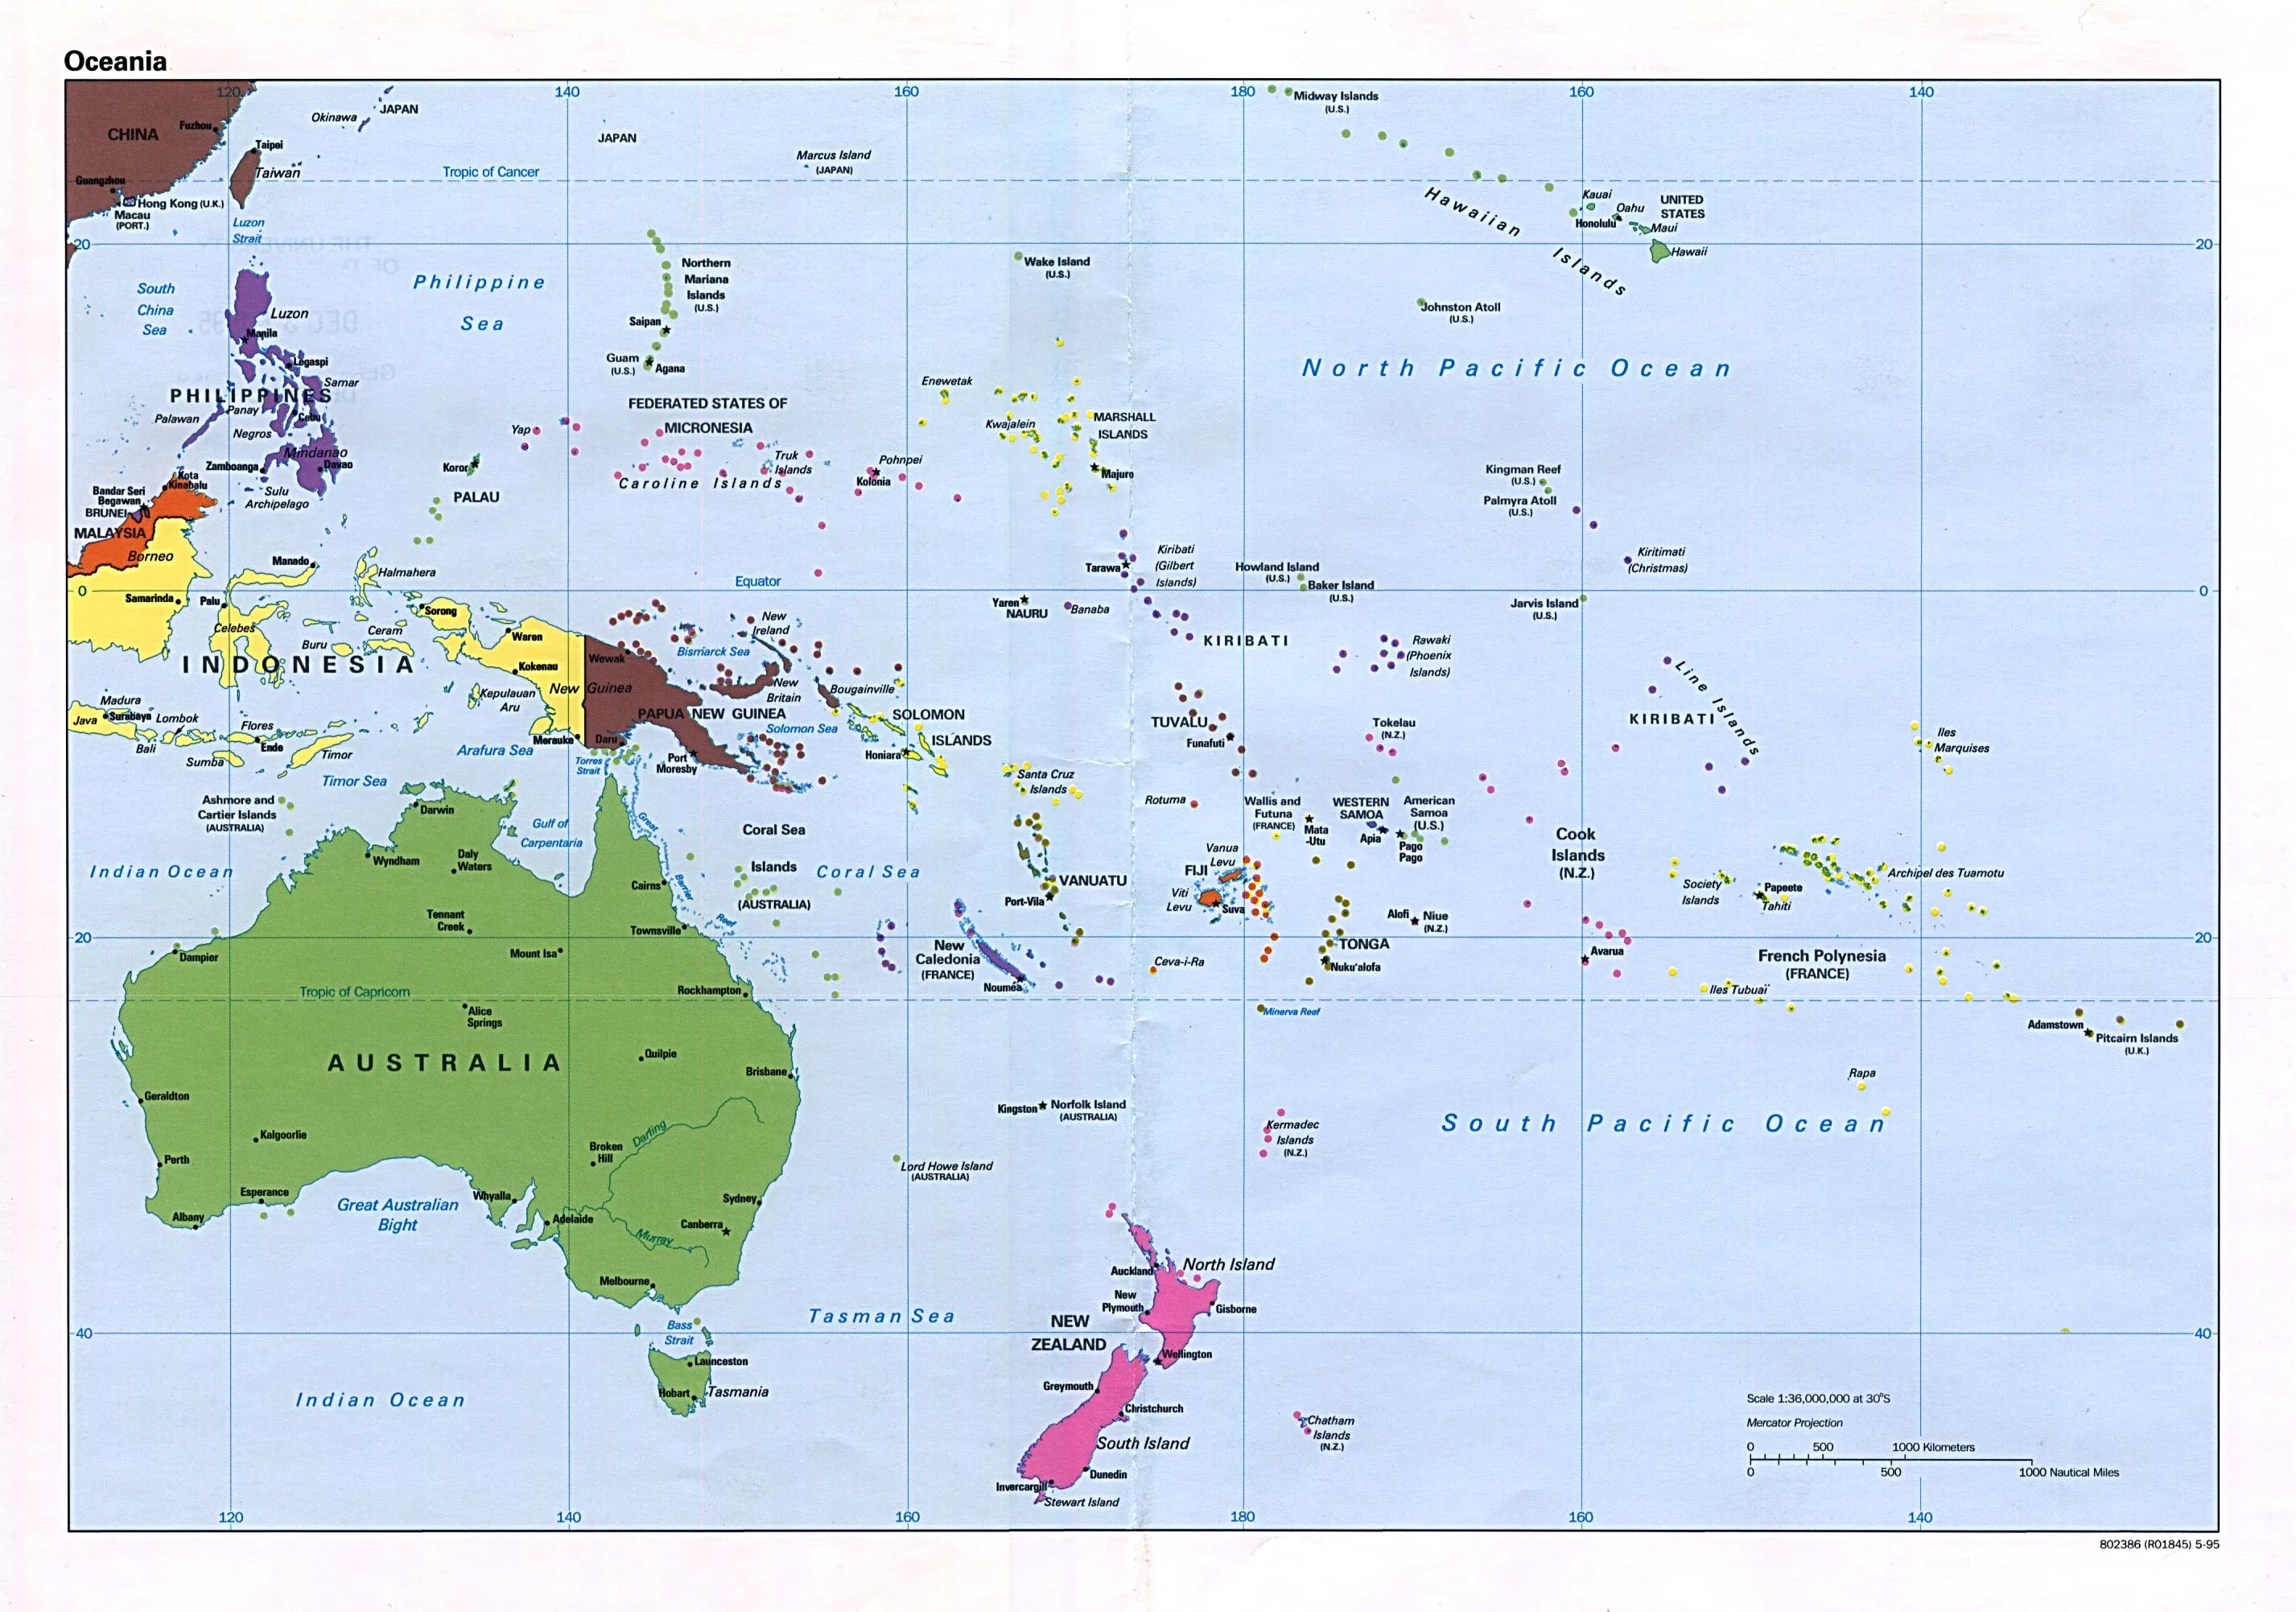 Mapa Politico de Oceanía 1995 - Tamaño completo